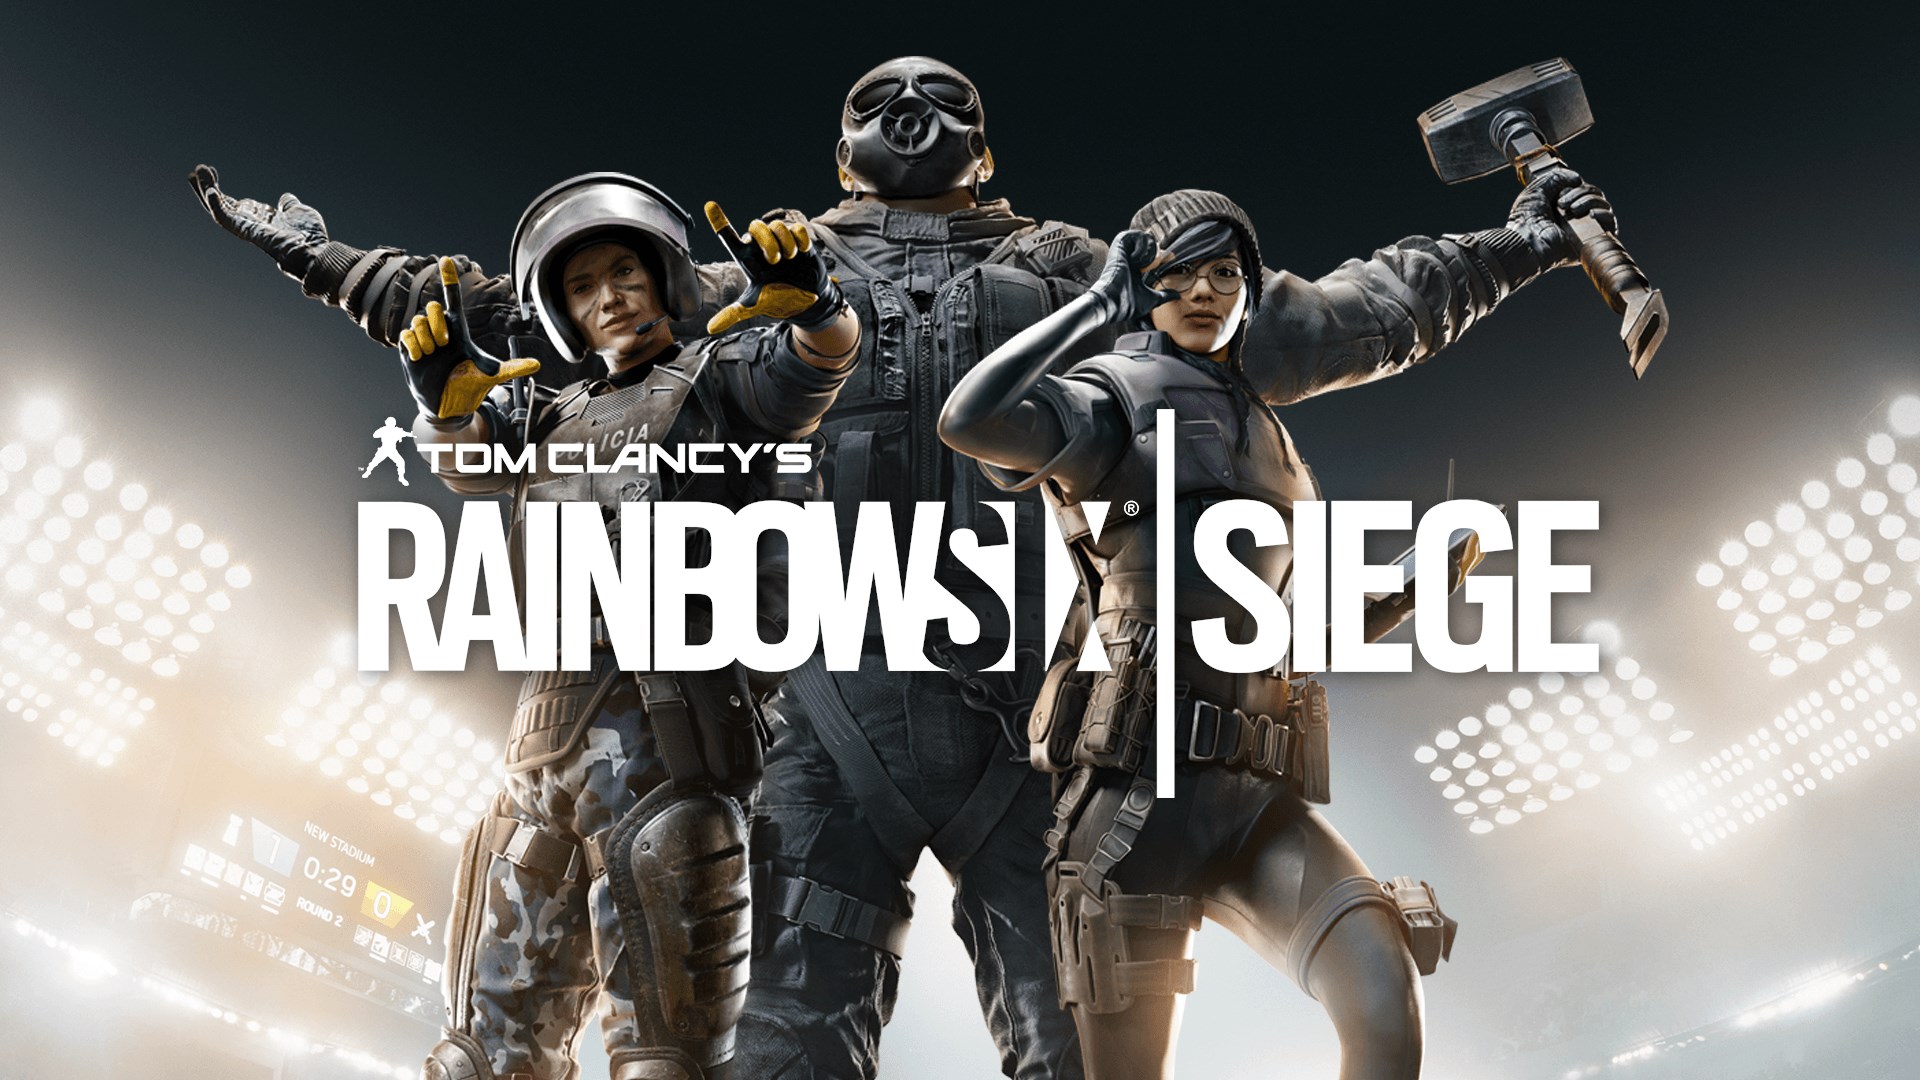 Kolejny sezon Rainbow Six Siege zostanie ogłoszony 19 lutego